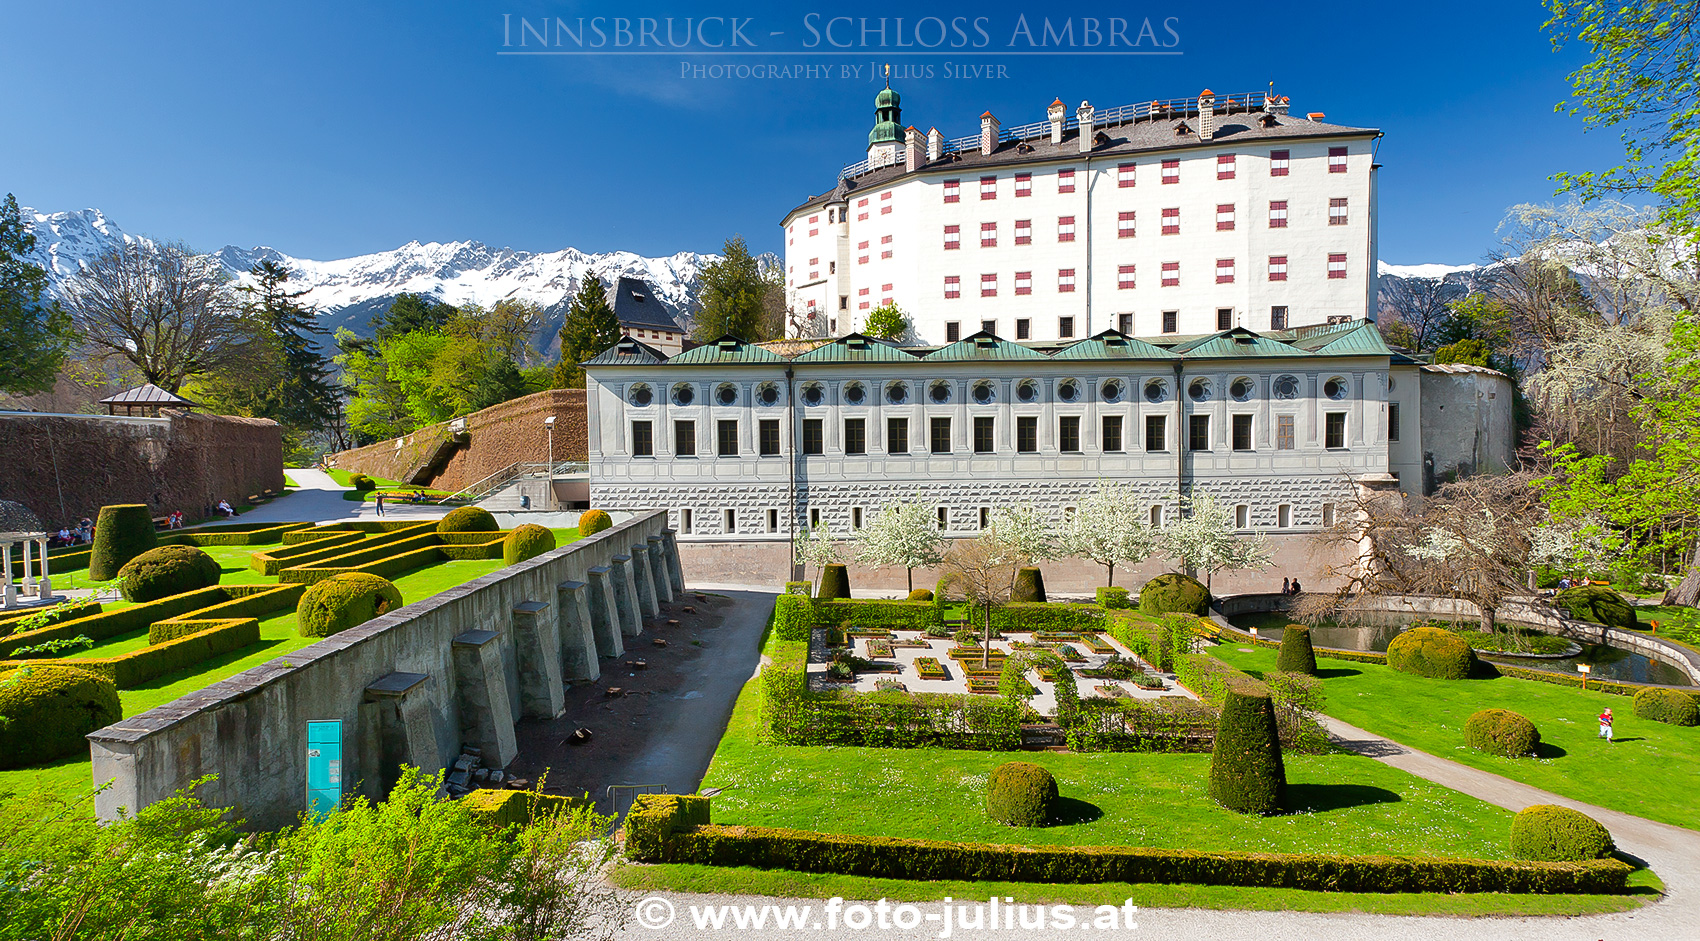 Innsbruck_021a_Schloss_Ambras.jpg, 1,2MB